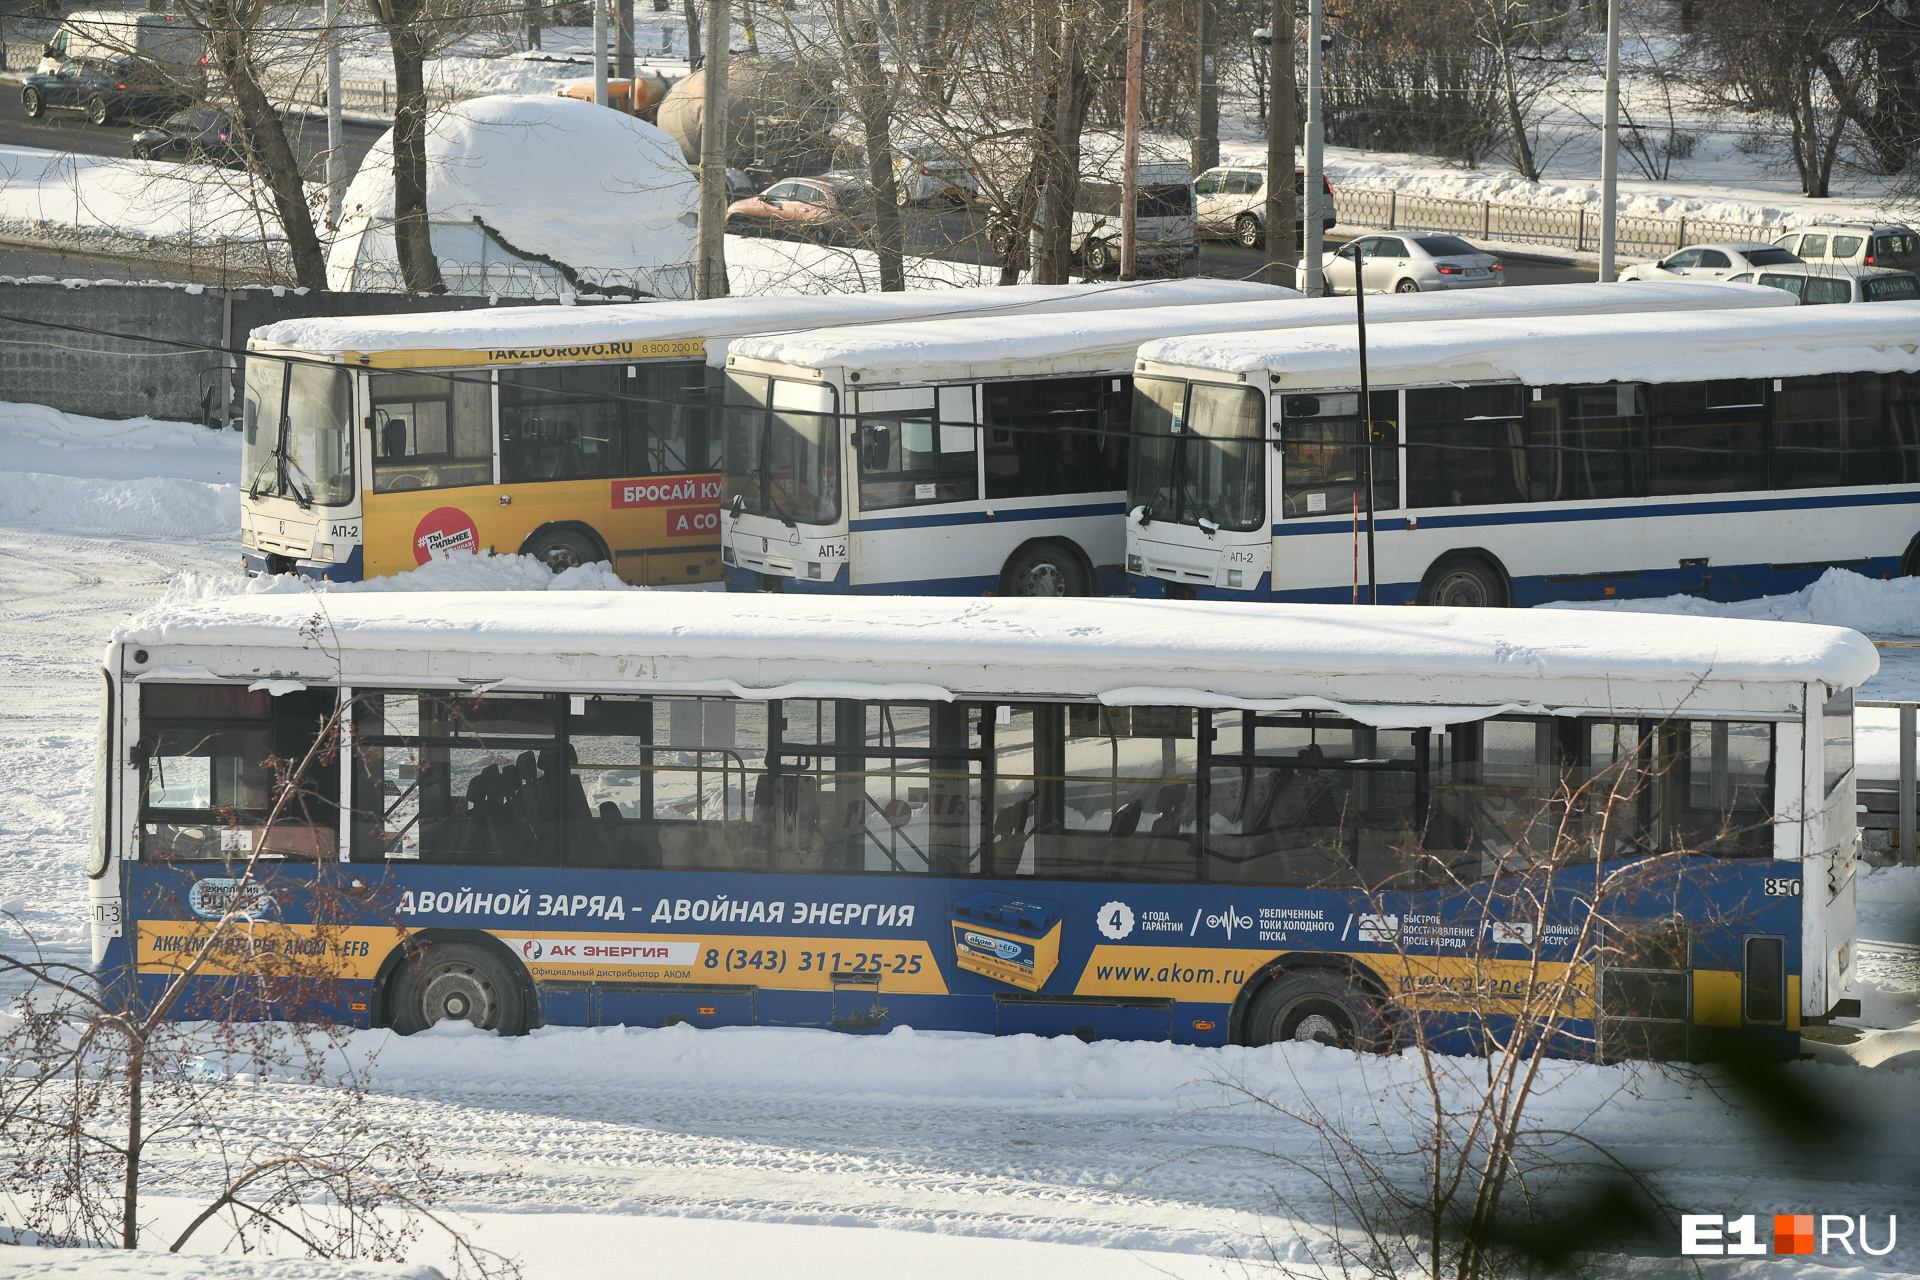 Многие автобусы Гортранса сегодня стоят без движения, поскольку на ремонт техники остро не хватает средств